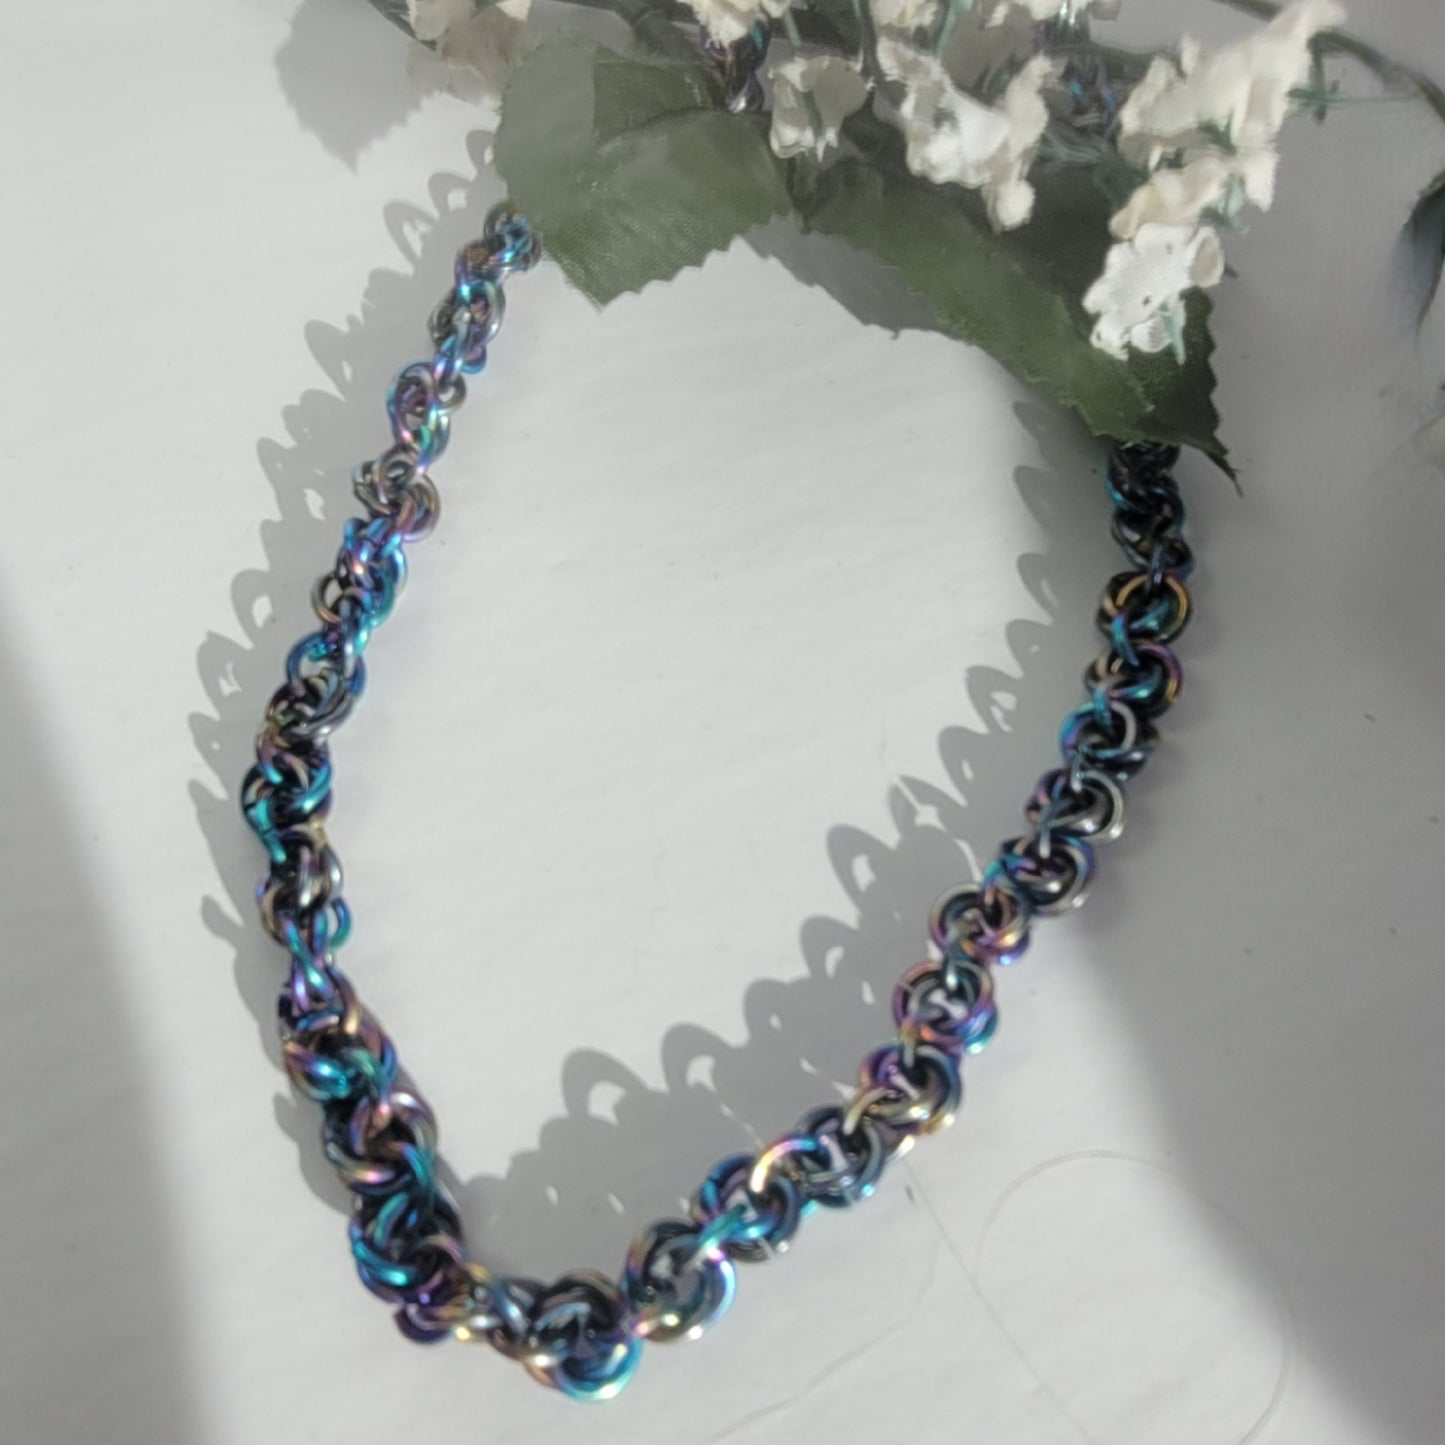 Rainbow rosette chainmail bracelet – Paint It Pretty